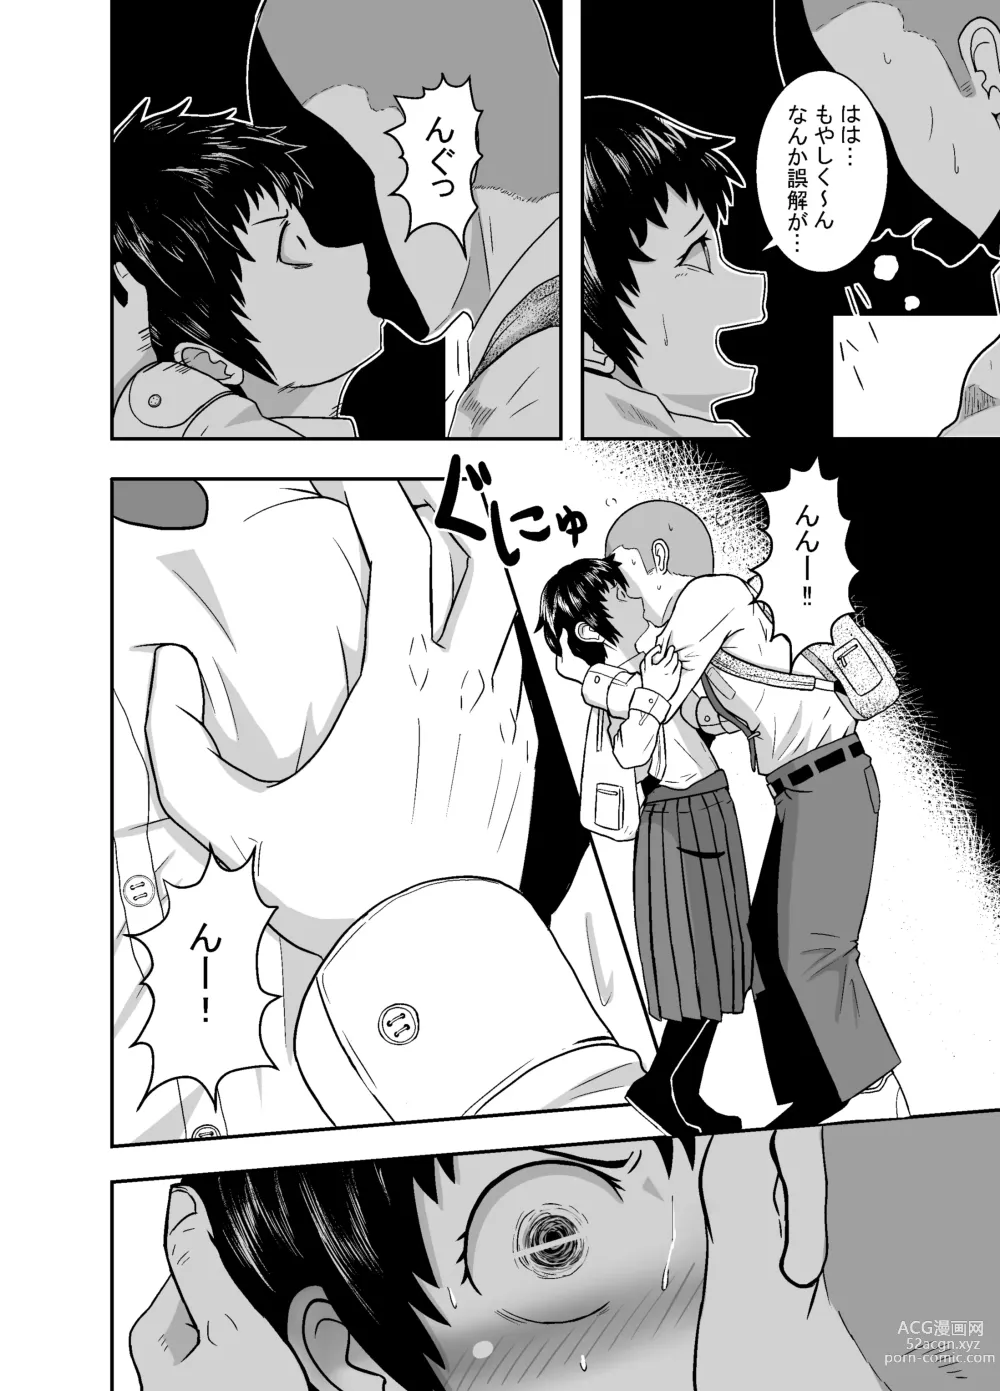 Page 21 of doujinshi Kimi ga Yarareru Kurai nara ~Genkikko Crisis~